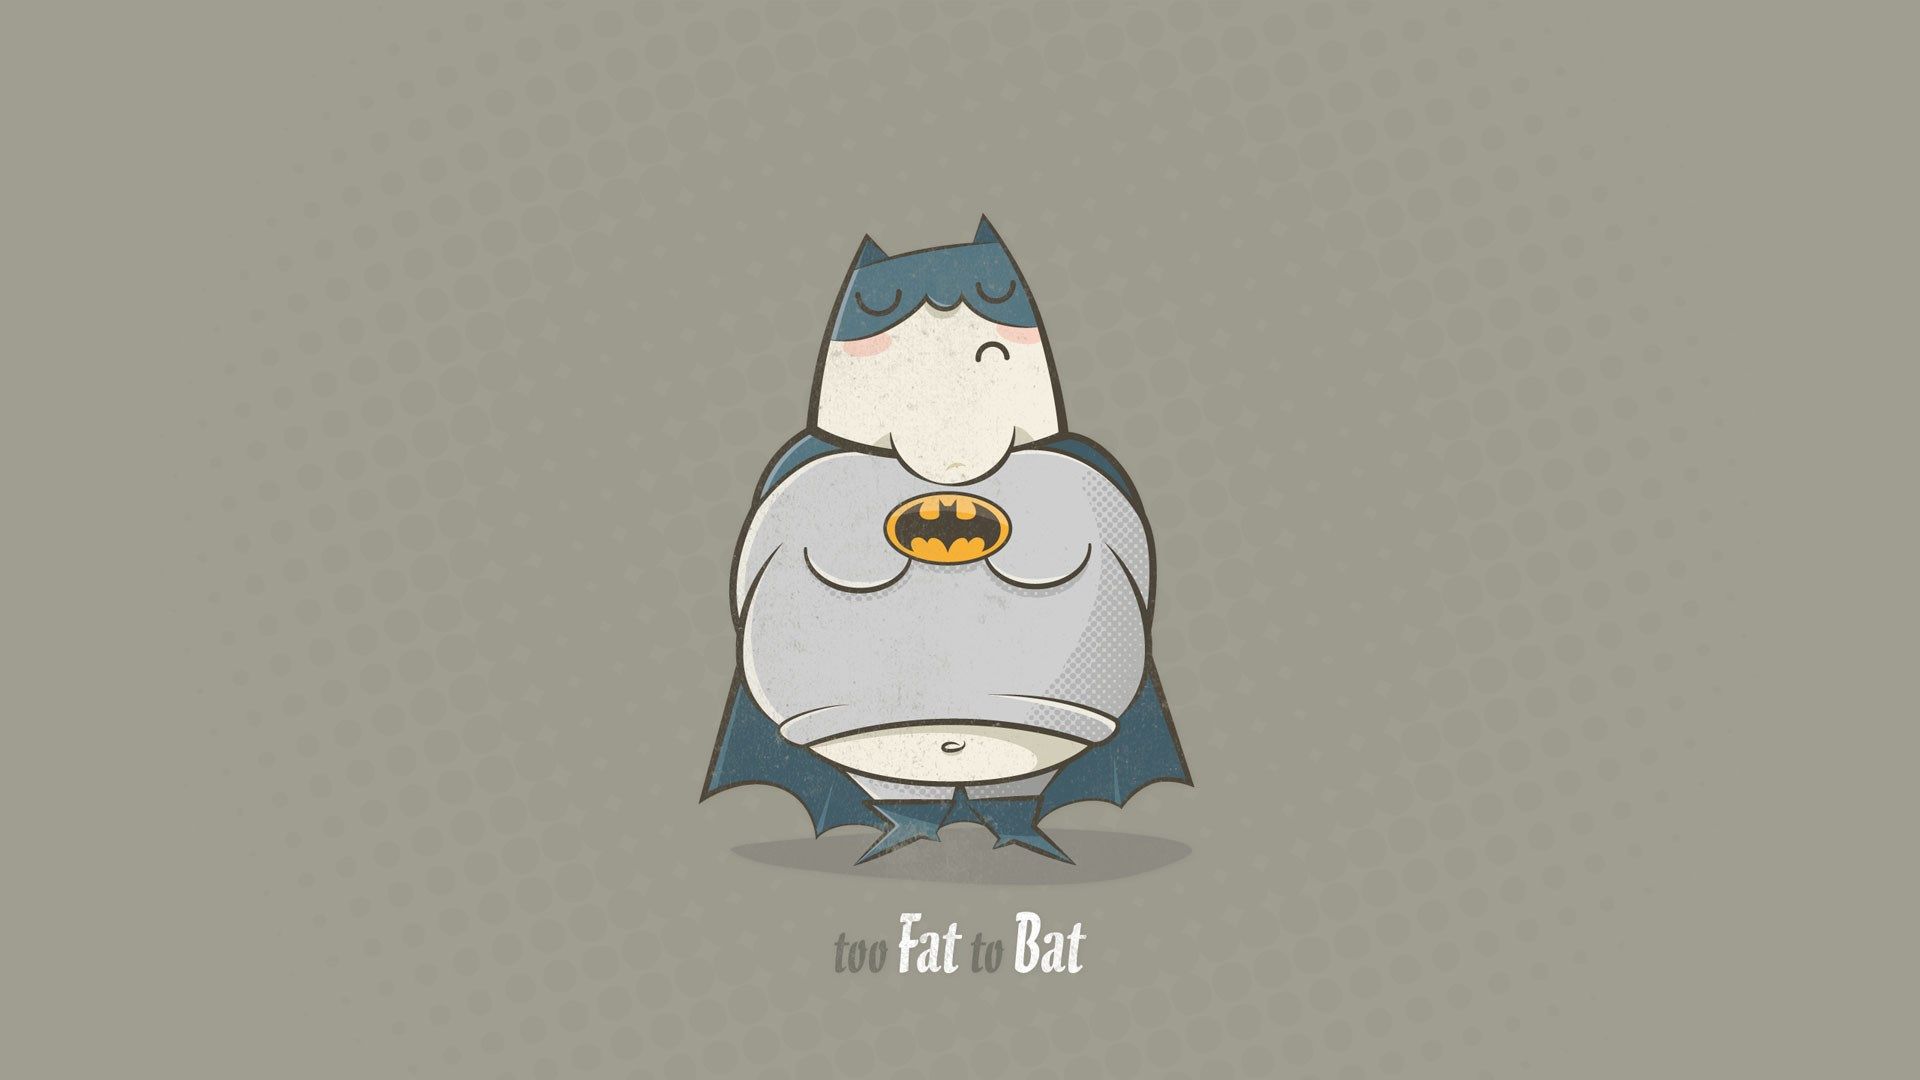 HD wallpaper, Bat, Too, Batman, Fat, Funny, To